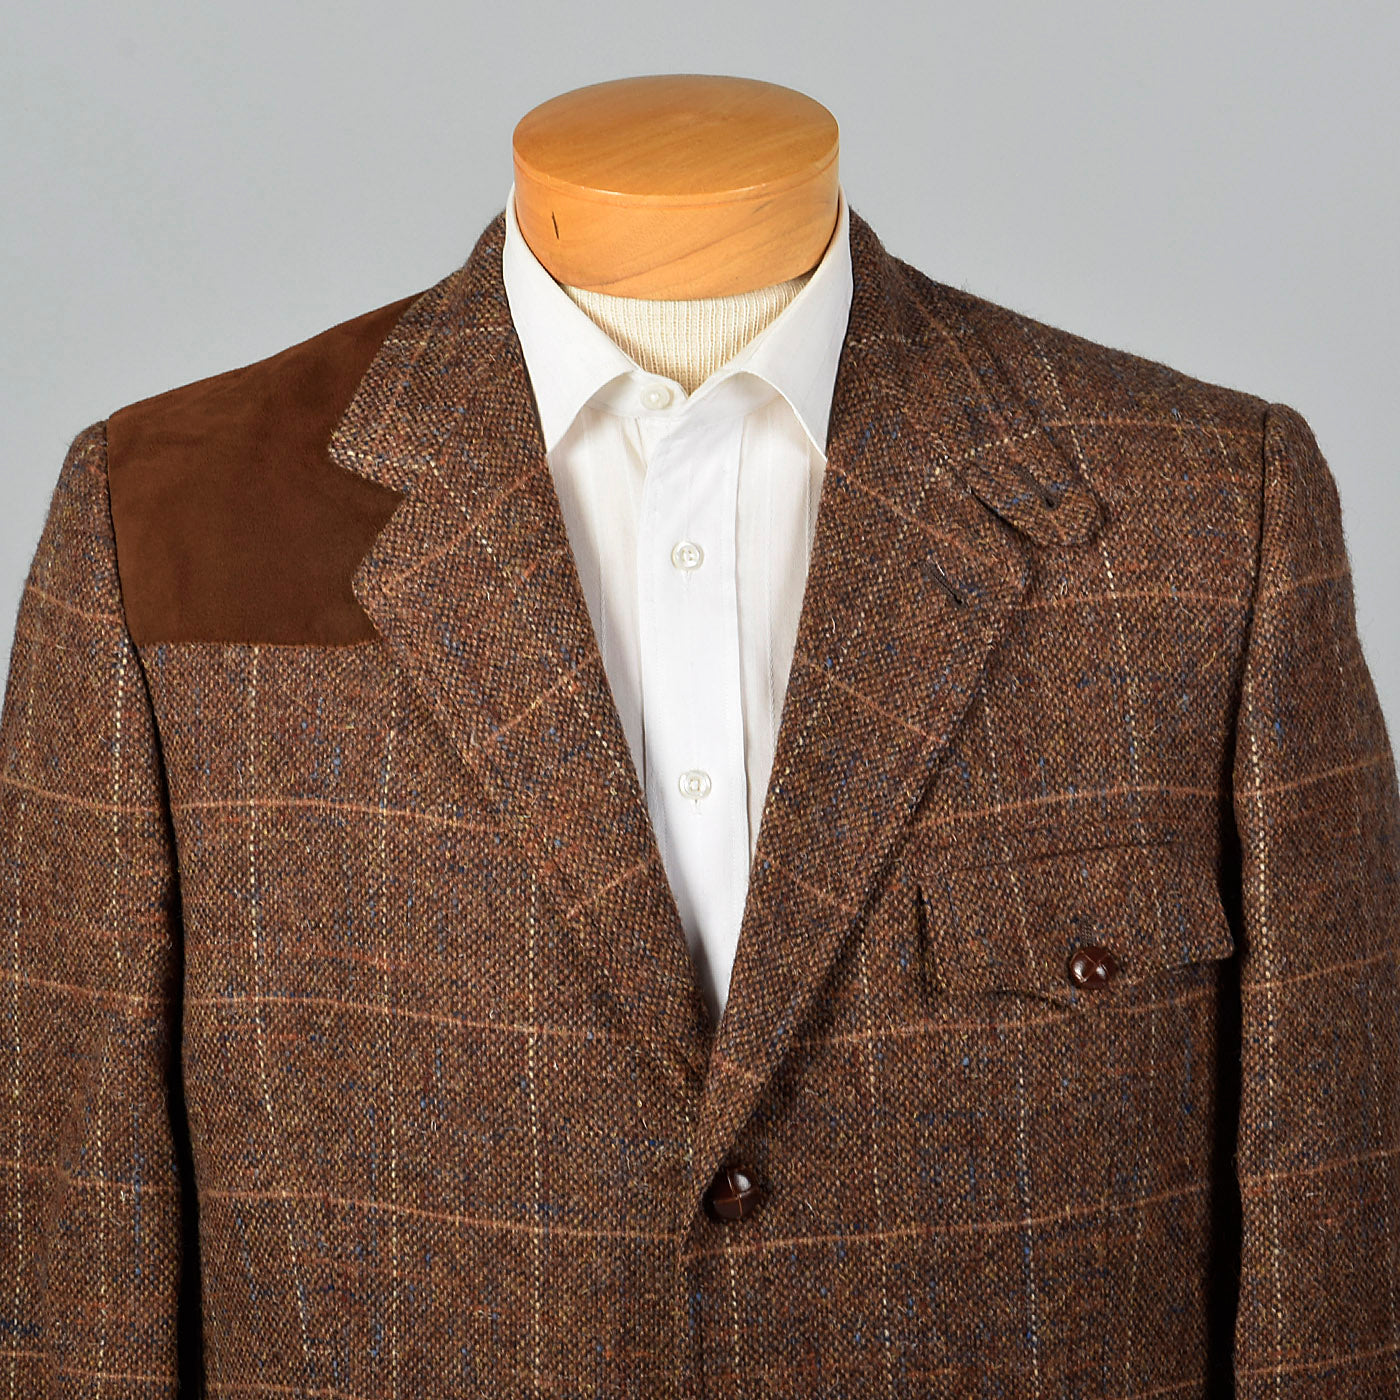 1970s Mens Saks Fifth Avenue Wool Tweed Shooting Jacket